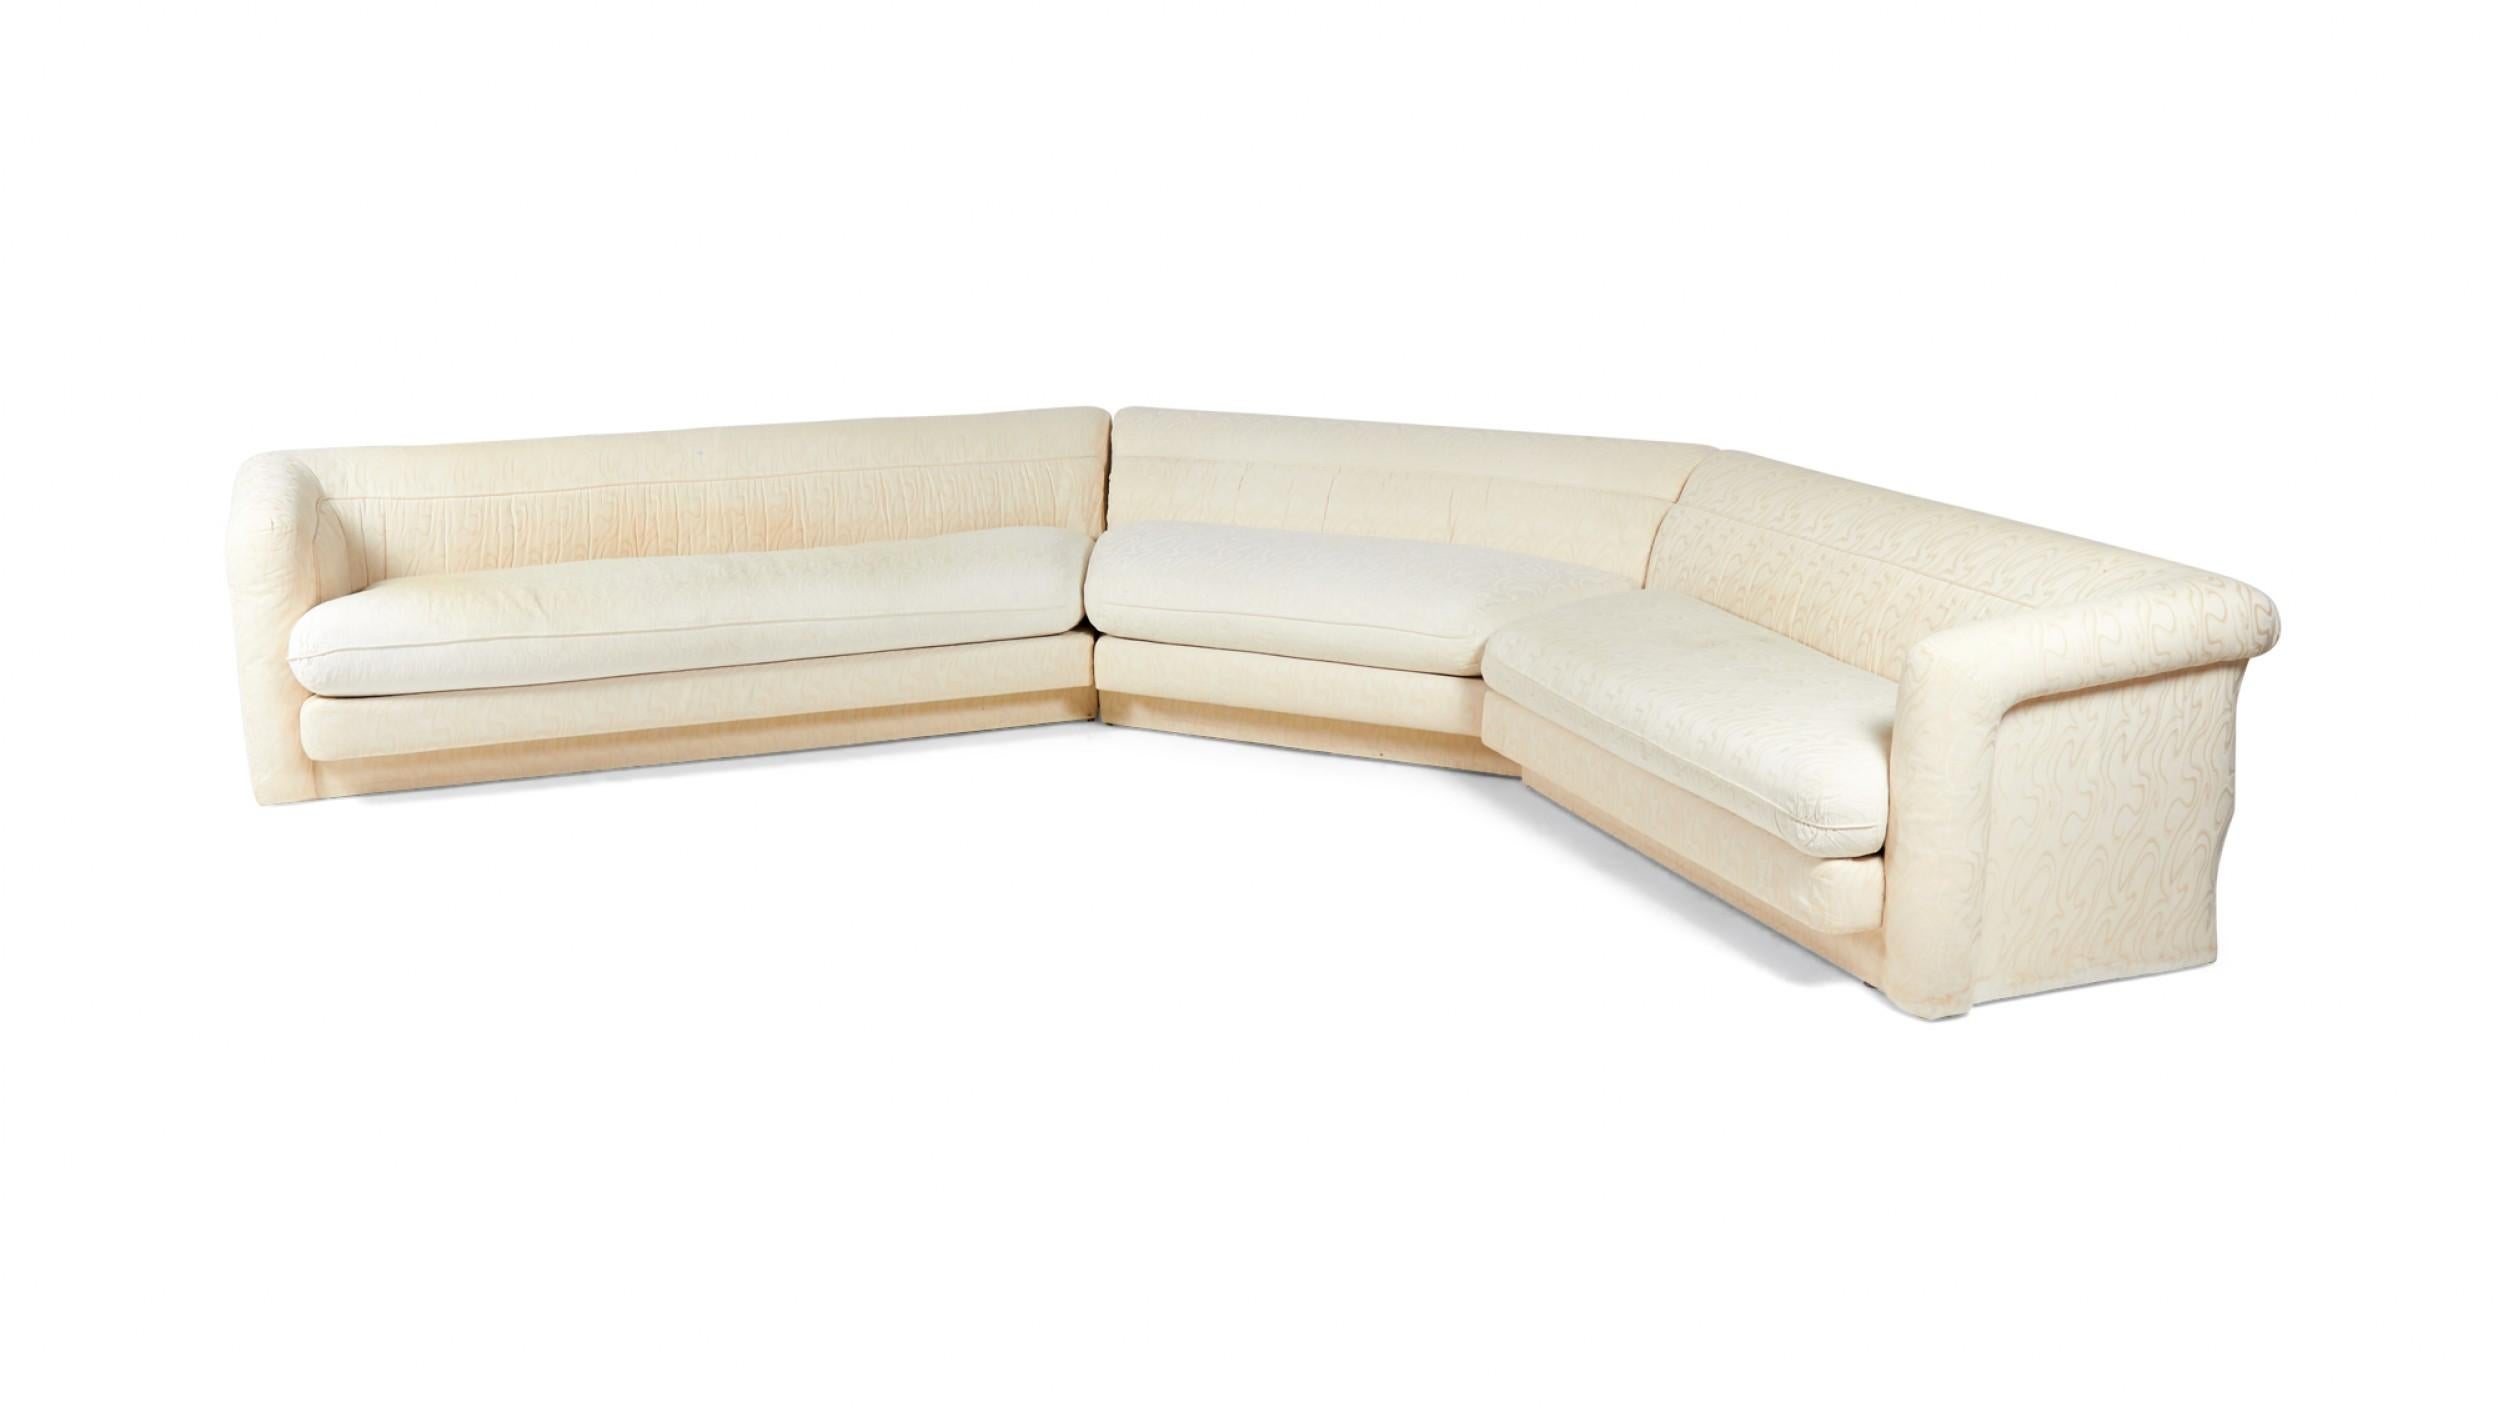 American Vintage (1980er Jahre) 3-teiliges Sektionssofa mit leicht wirbelgemusterter weißer/cremefarbener Polsterung, abnehmbaren Sitzpolstern und Armlehnen an den Enden der beiden äußeren Teile.